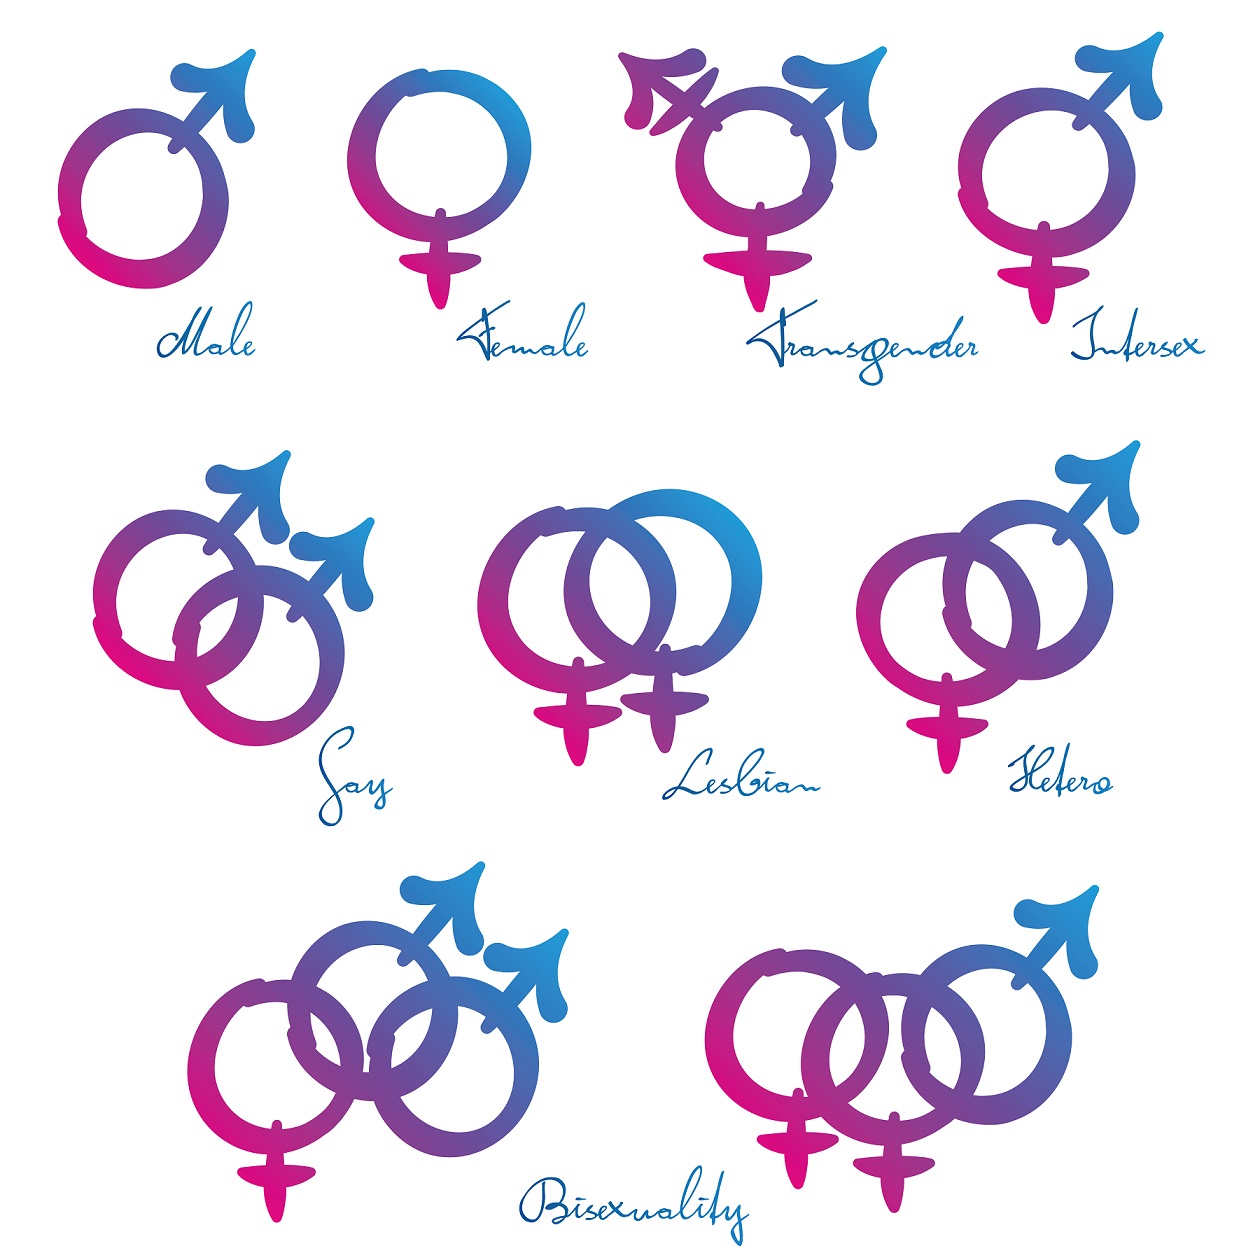 Přehled symbolů pro různé sexuální a genderové identity